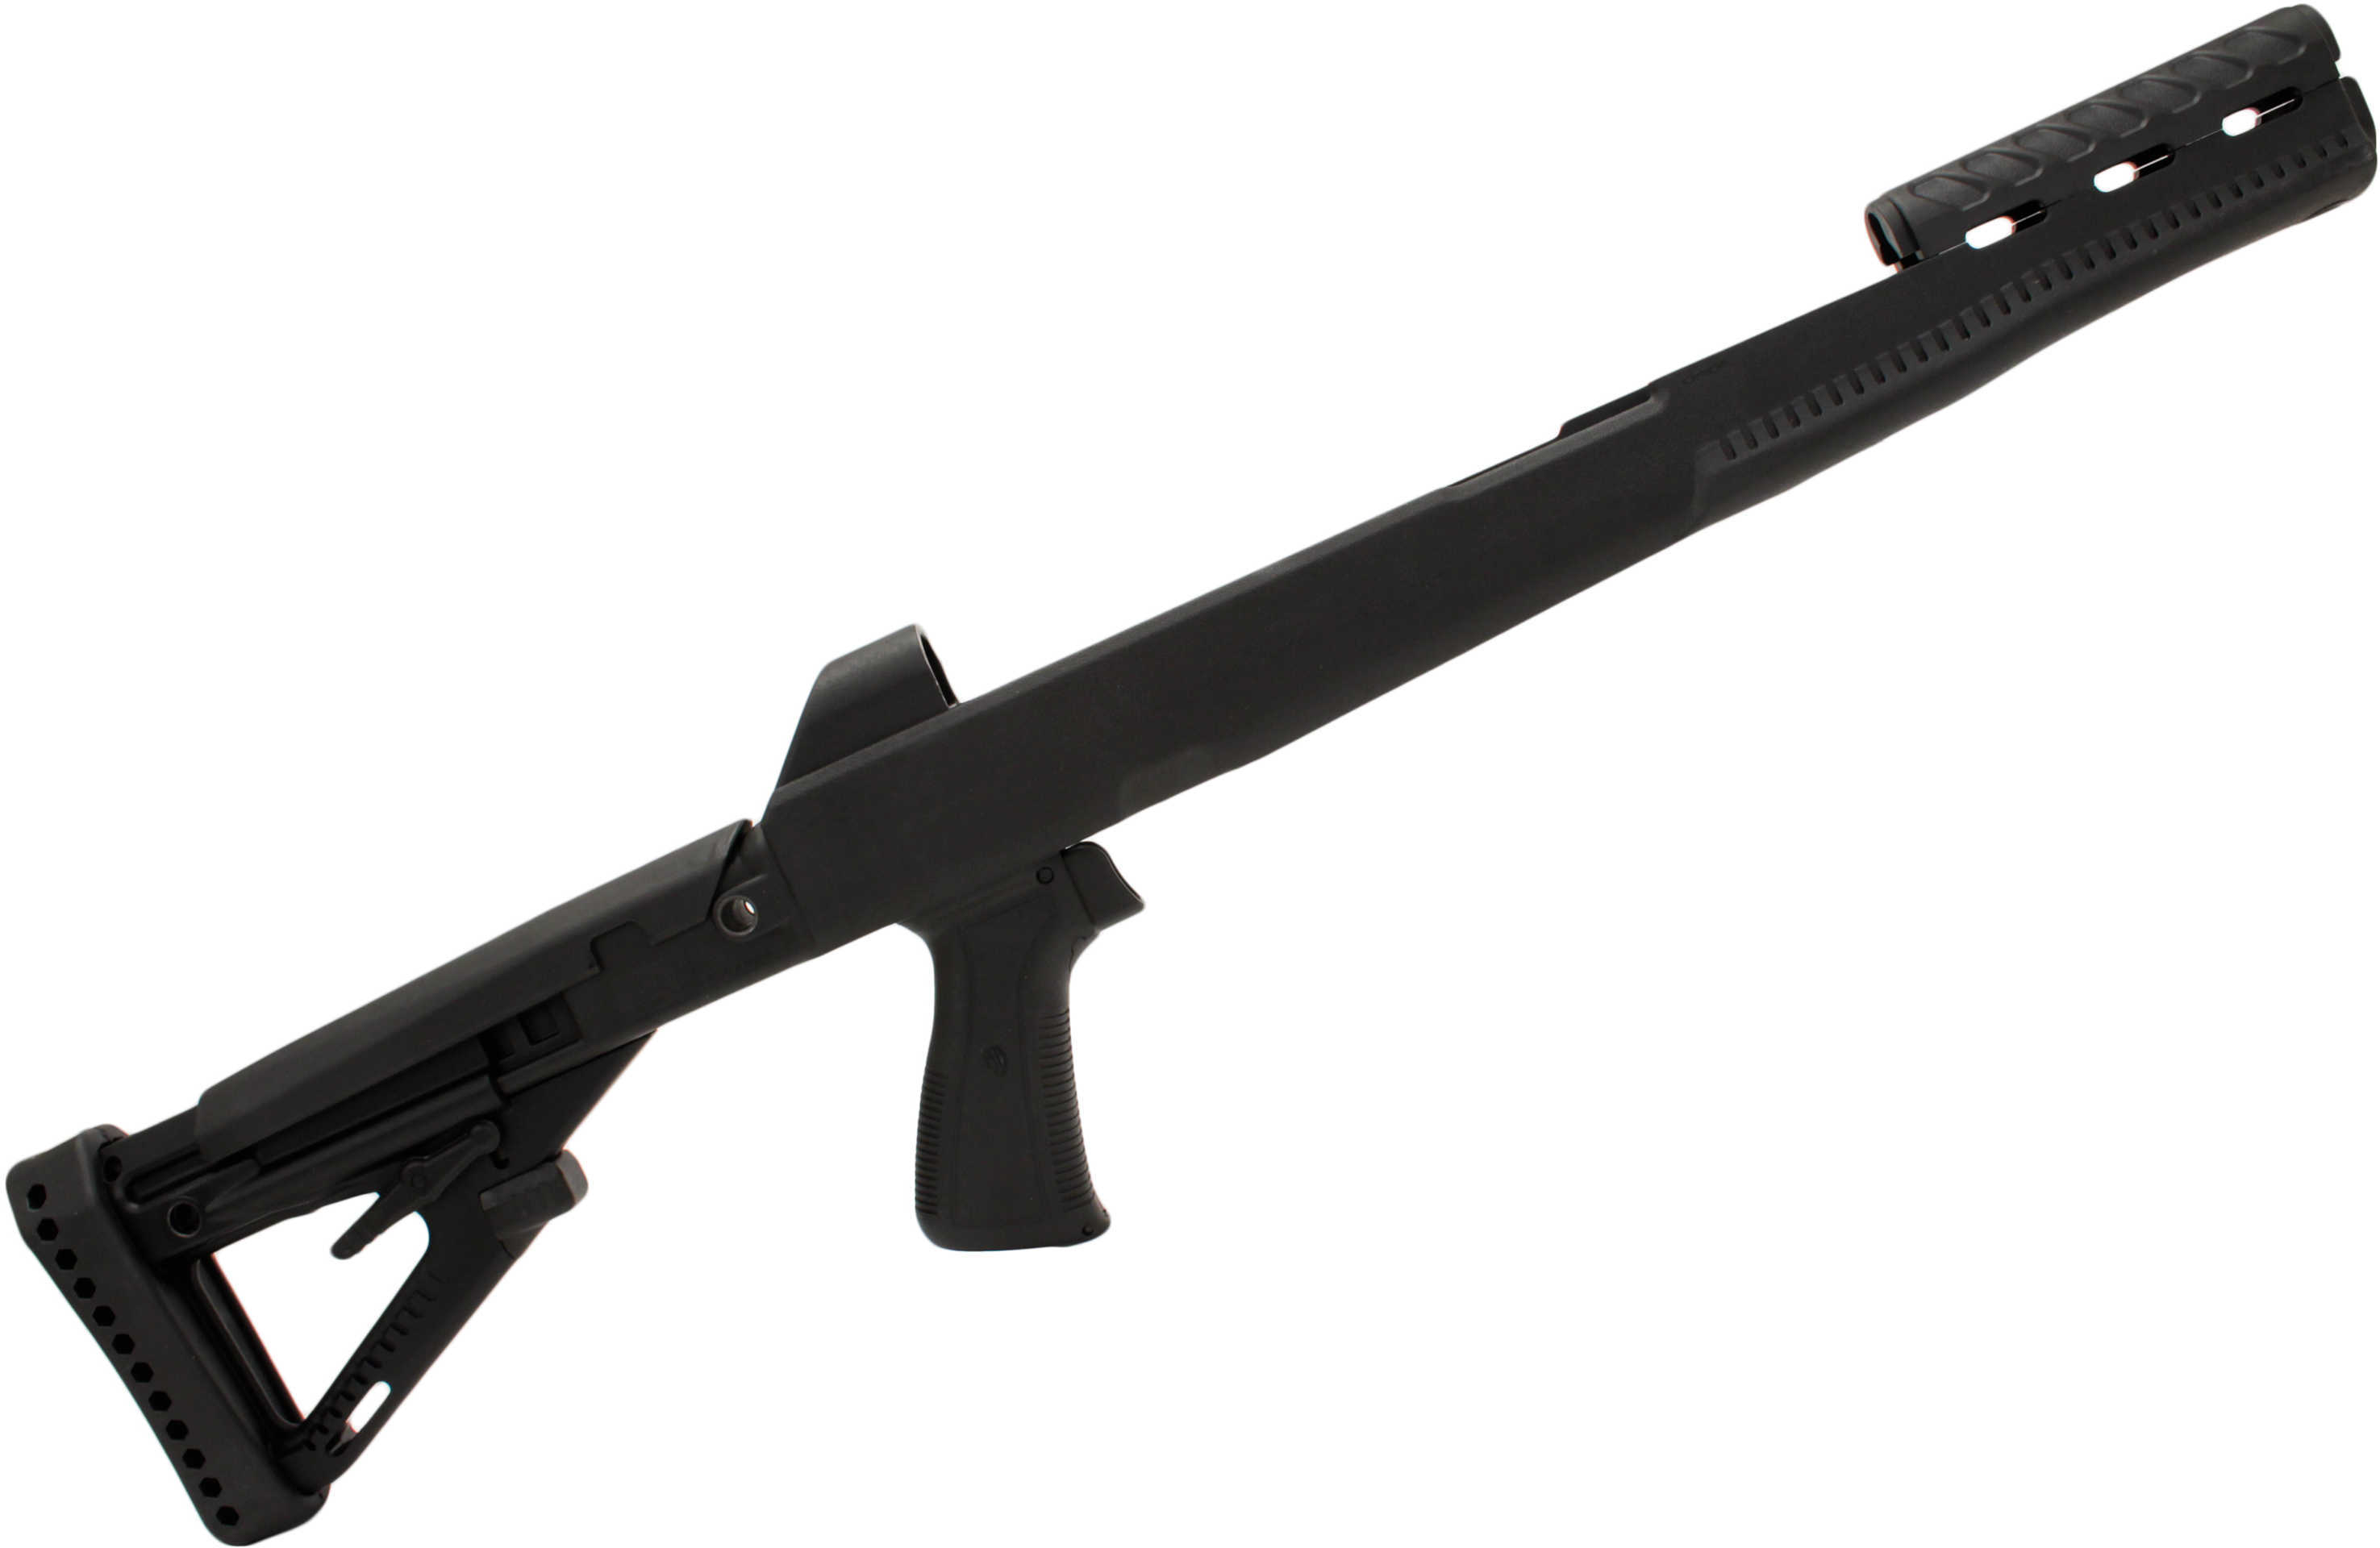 ProMag Archangel Opfor Pistol Grip Conversion Stock Fits SKS Adjustable Black Finish AASKS